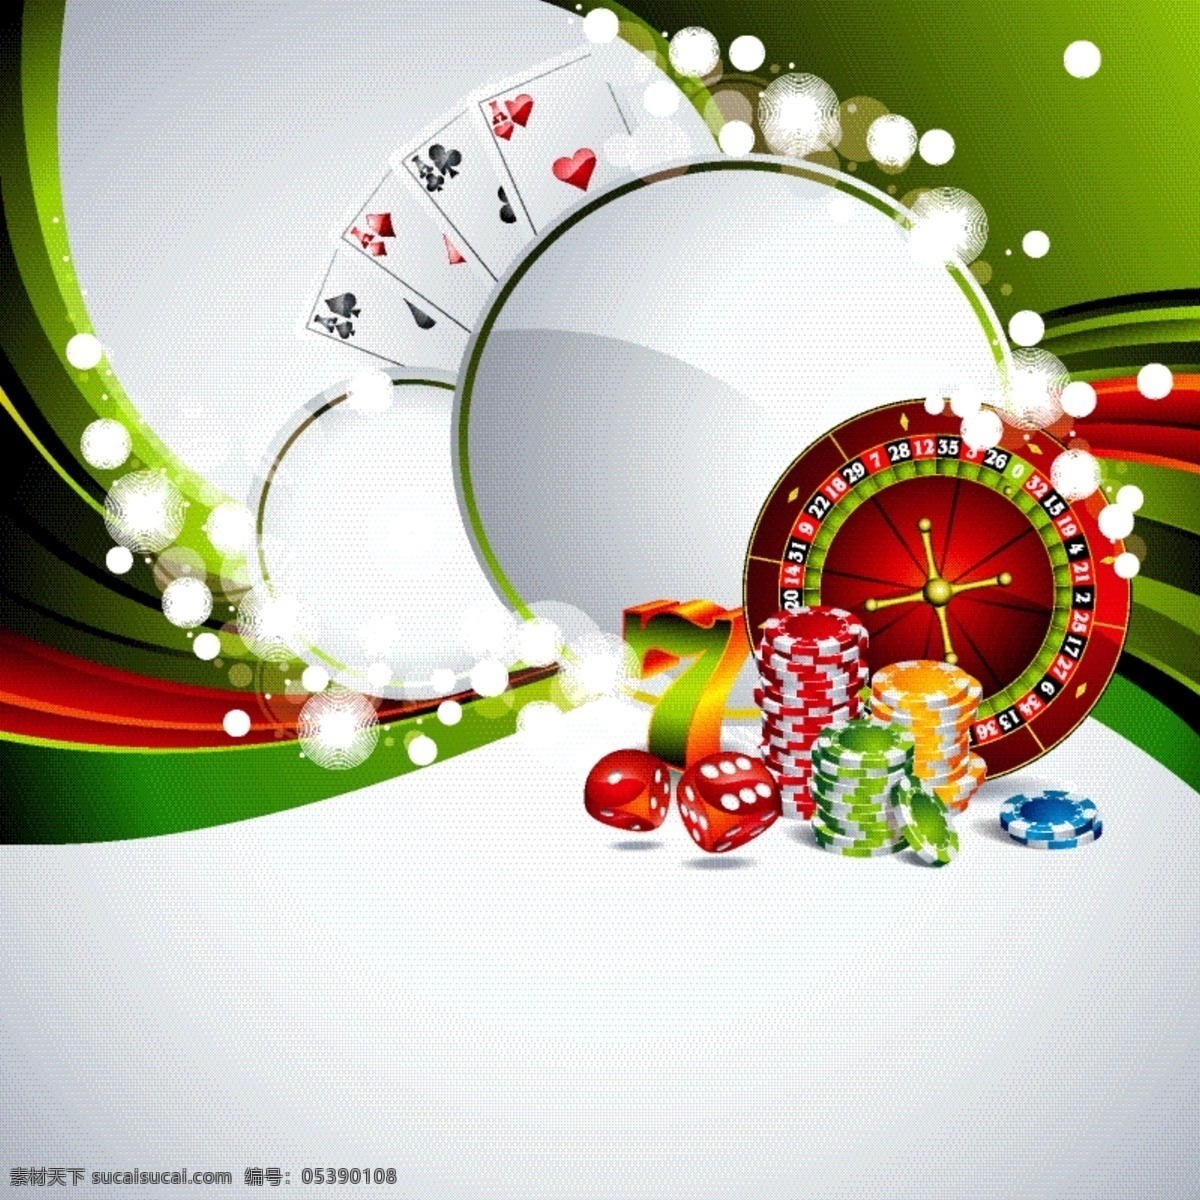 赌场背景设计 背景 卡片 墙纸 颜色 游戏 五颜六色 赌场 扑克 芯片 背景颜色 轮盘赌 赌博 有色